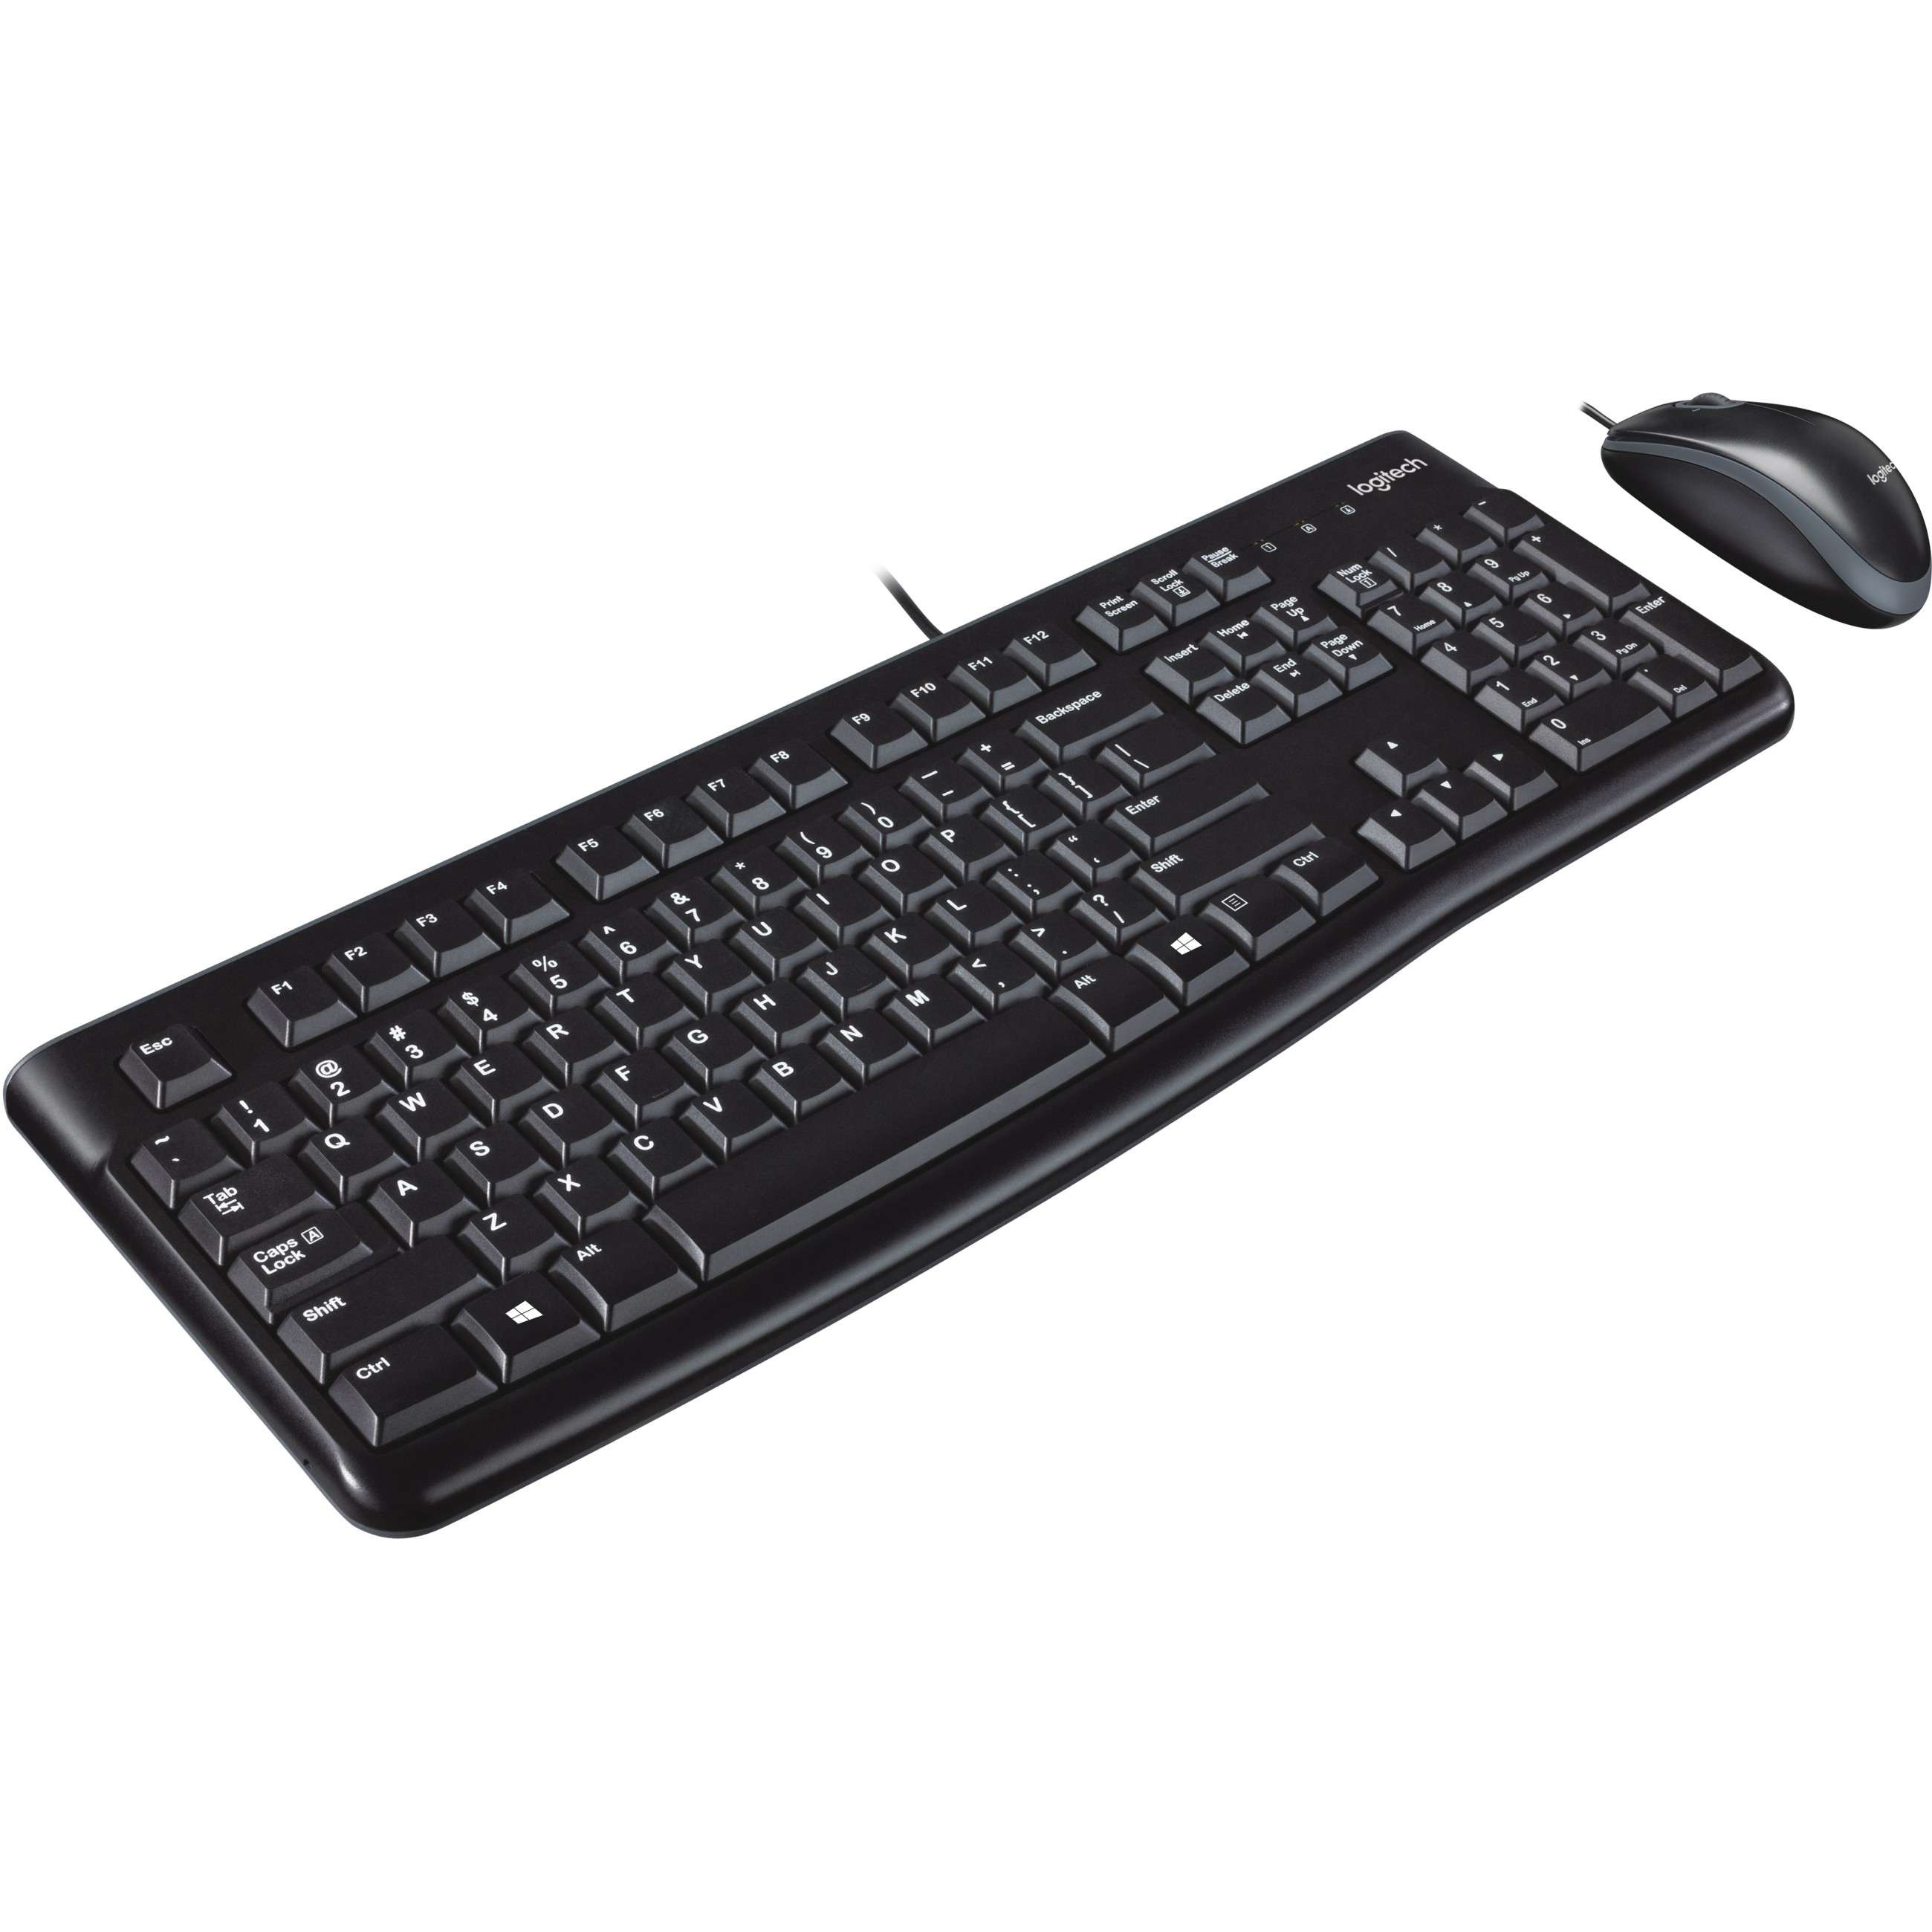 Logitech Desktop MK120 keyboard - 920-002562